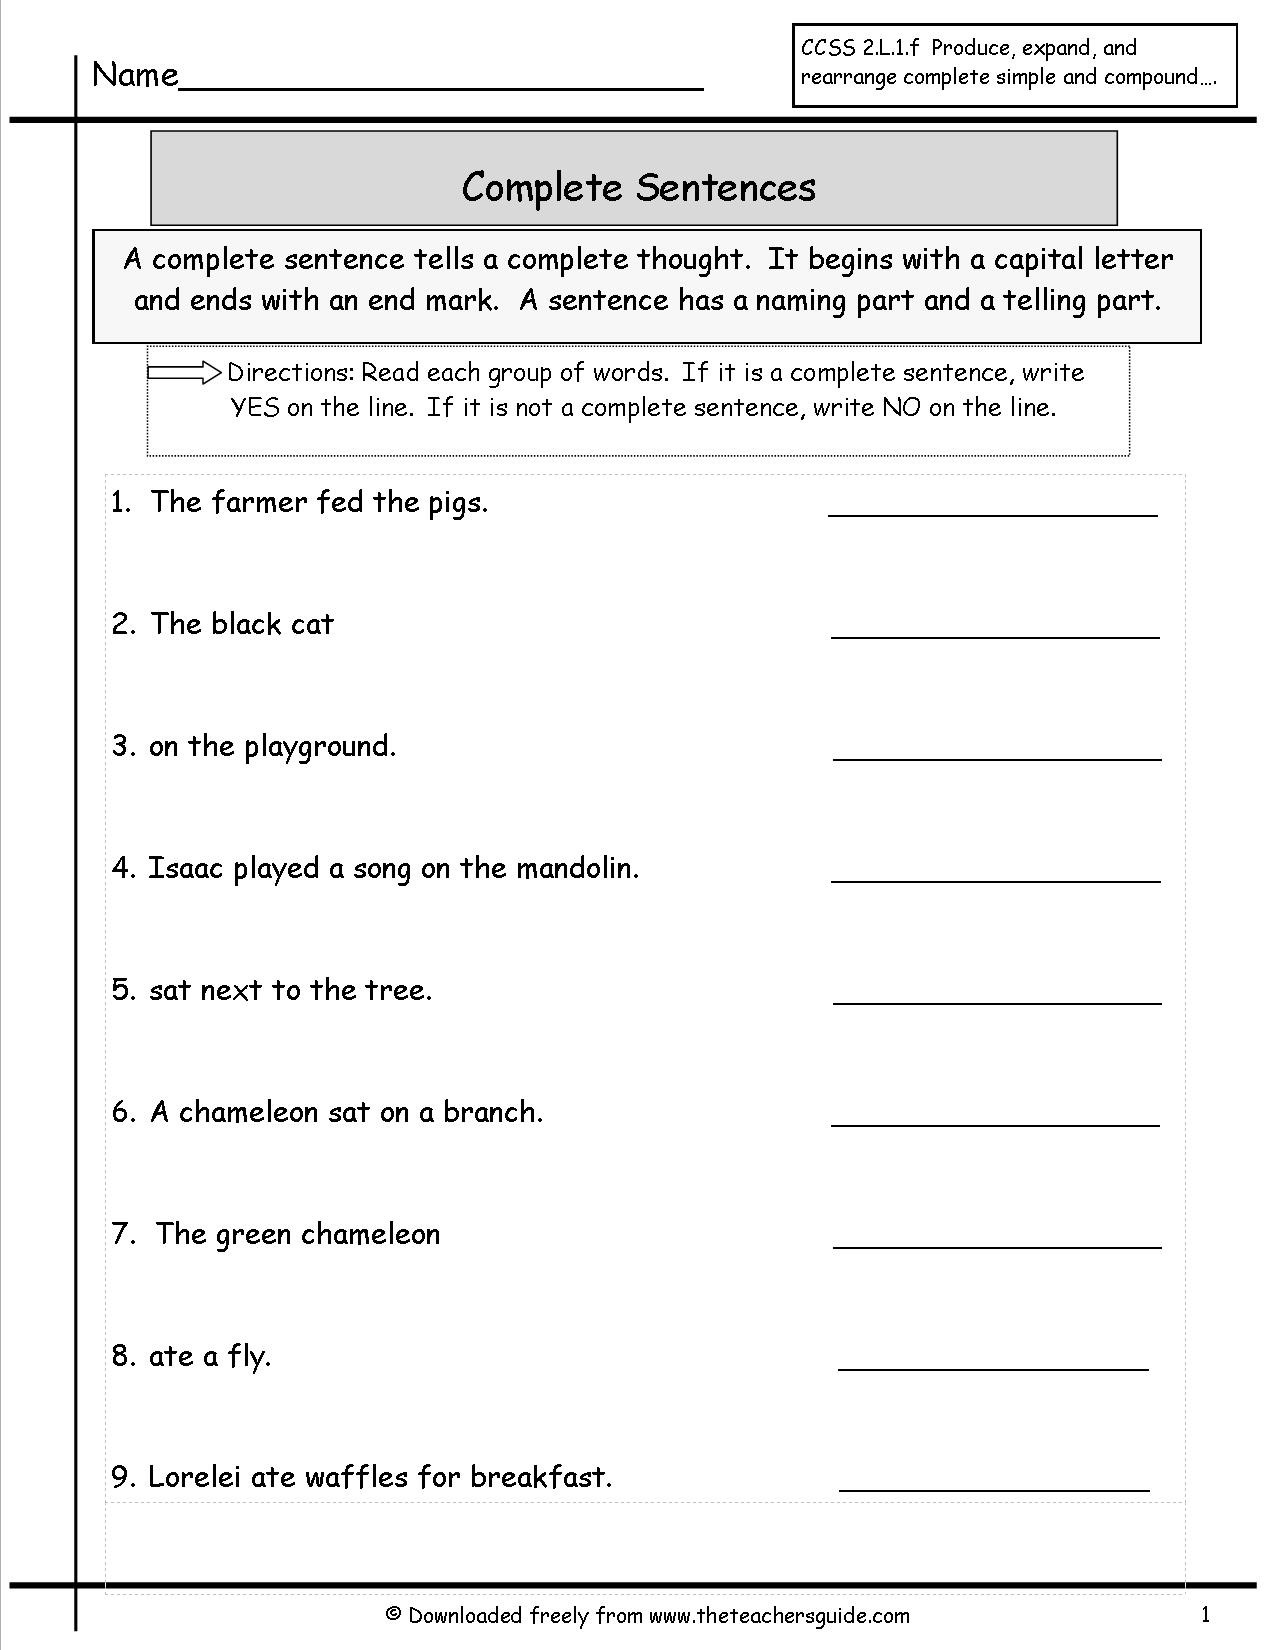 Complete Sentences Worksheets 3rd Grade Parts A Sentence Worksheet